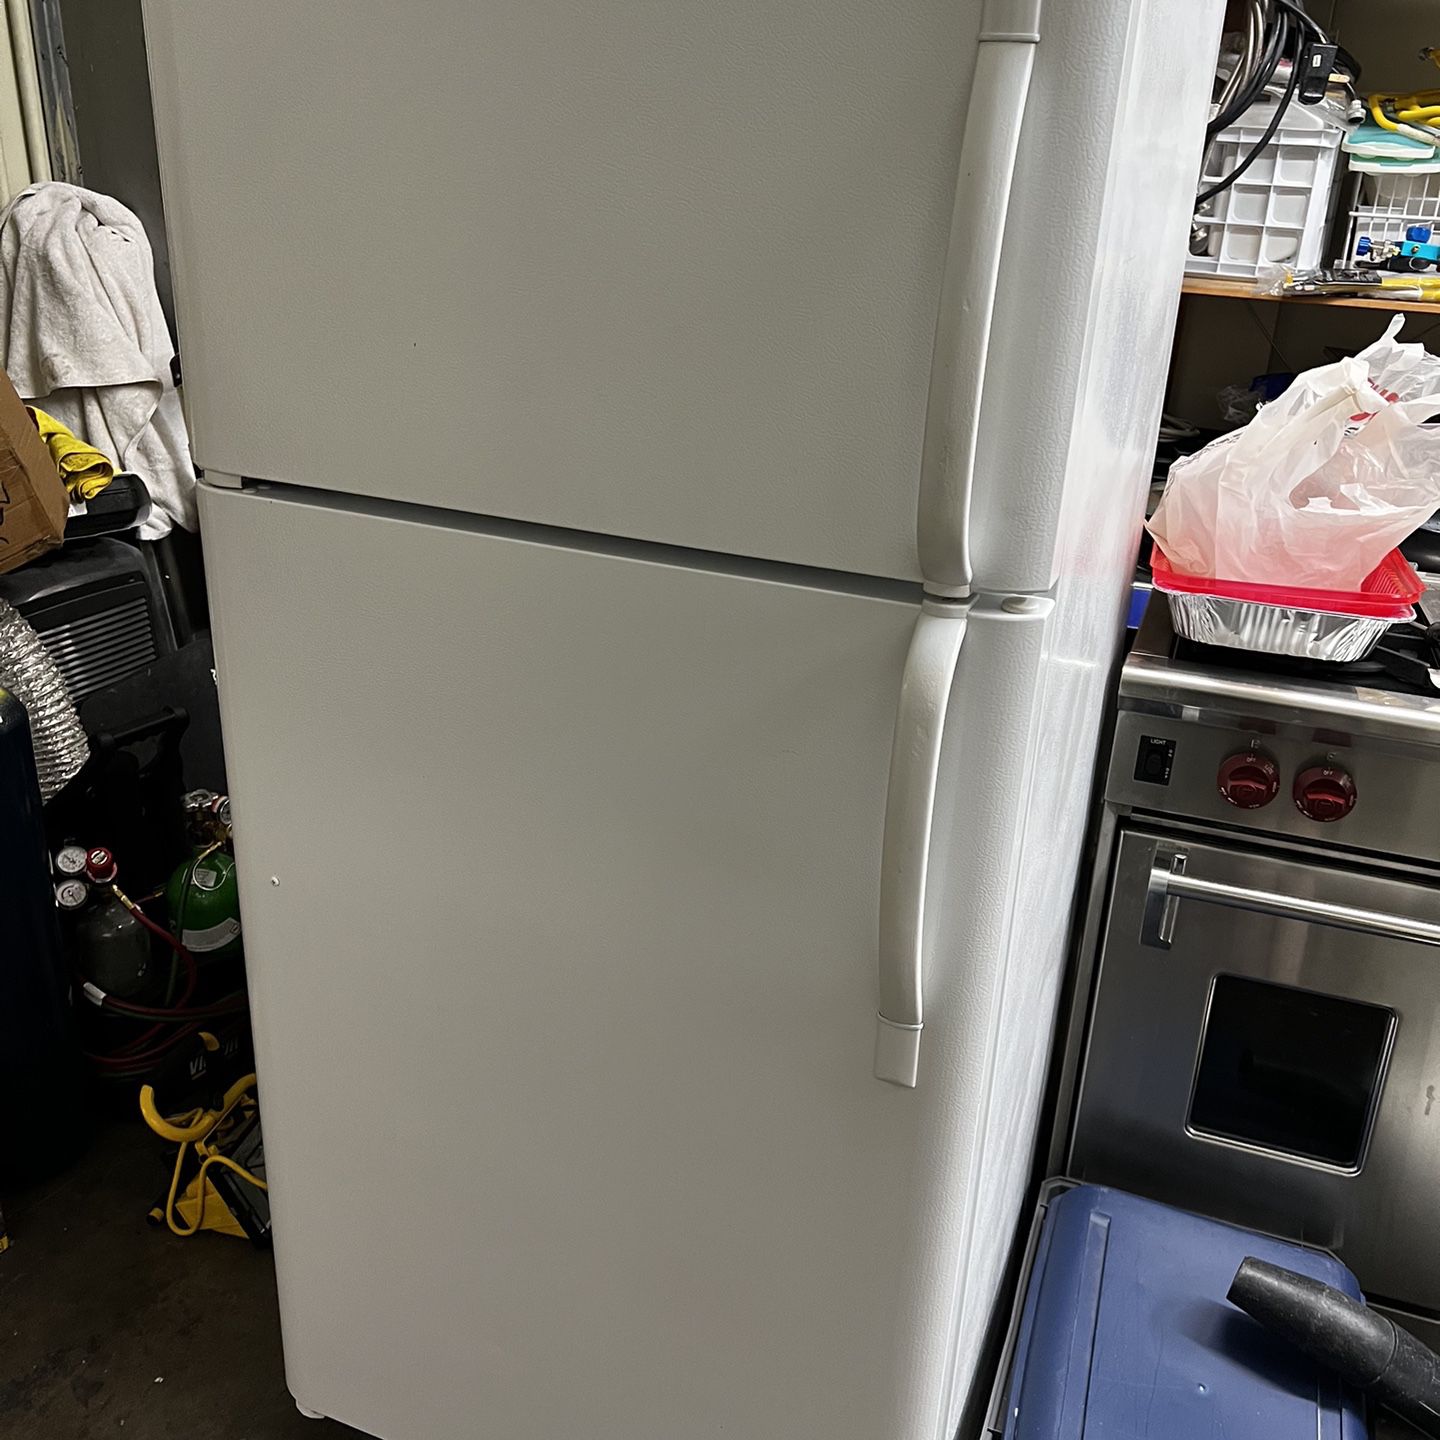 Frigidaire White Apartment Size Refrigerator 